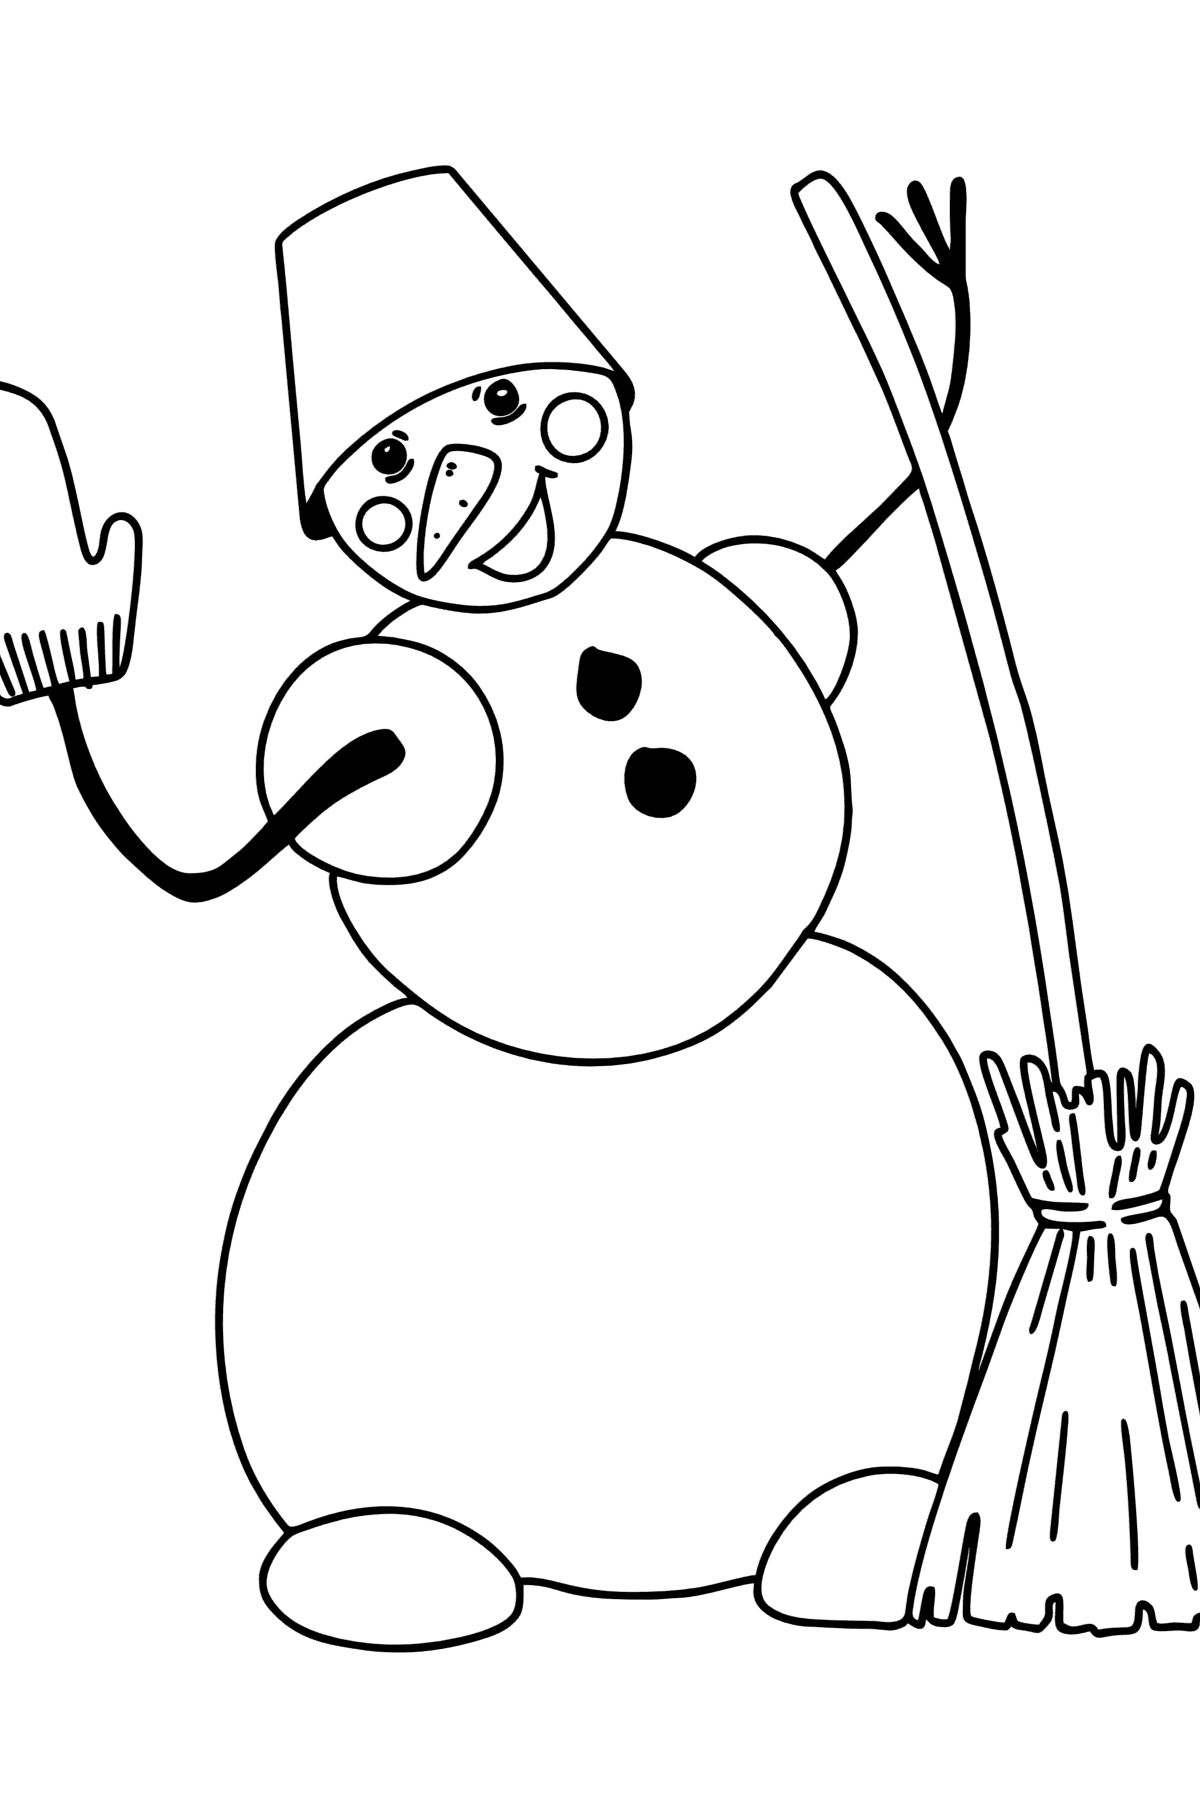 Desenho para colorir do boneco de neve com vassoura - Imagens para Colorir para Crianças